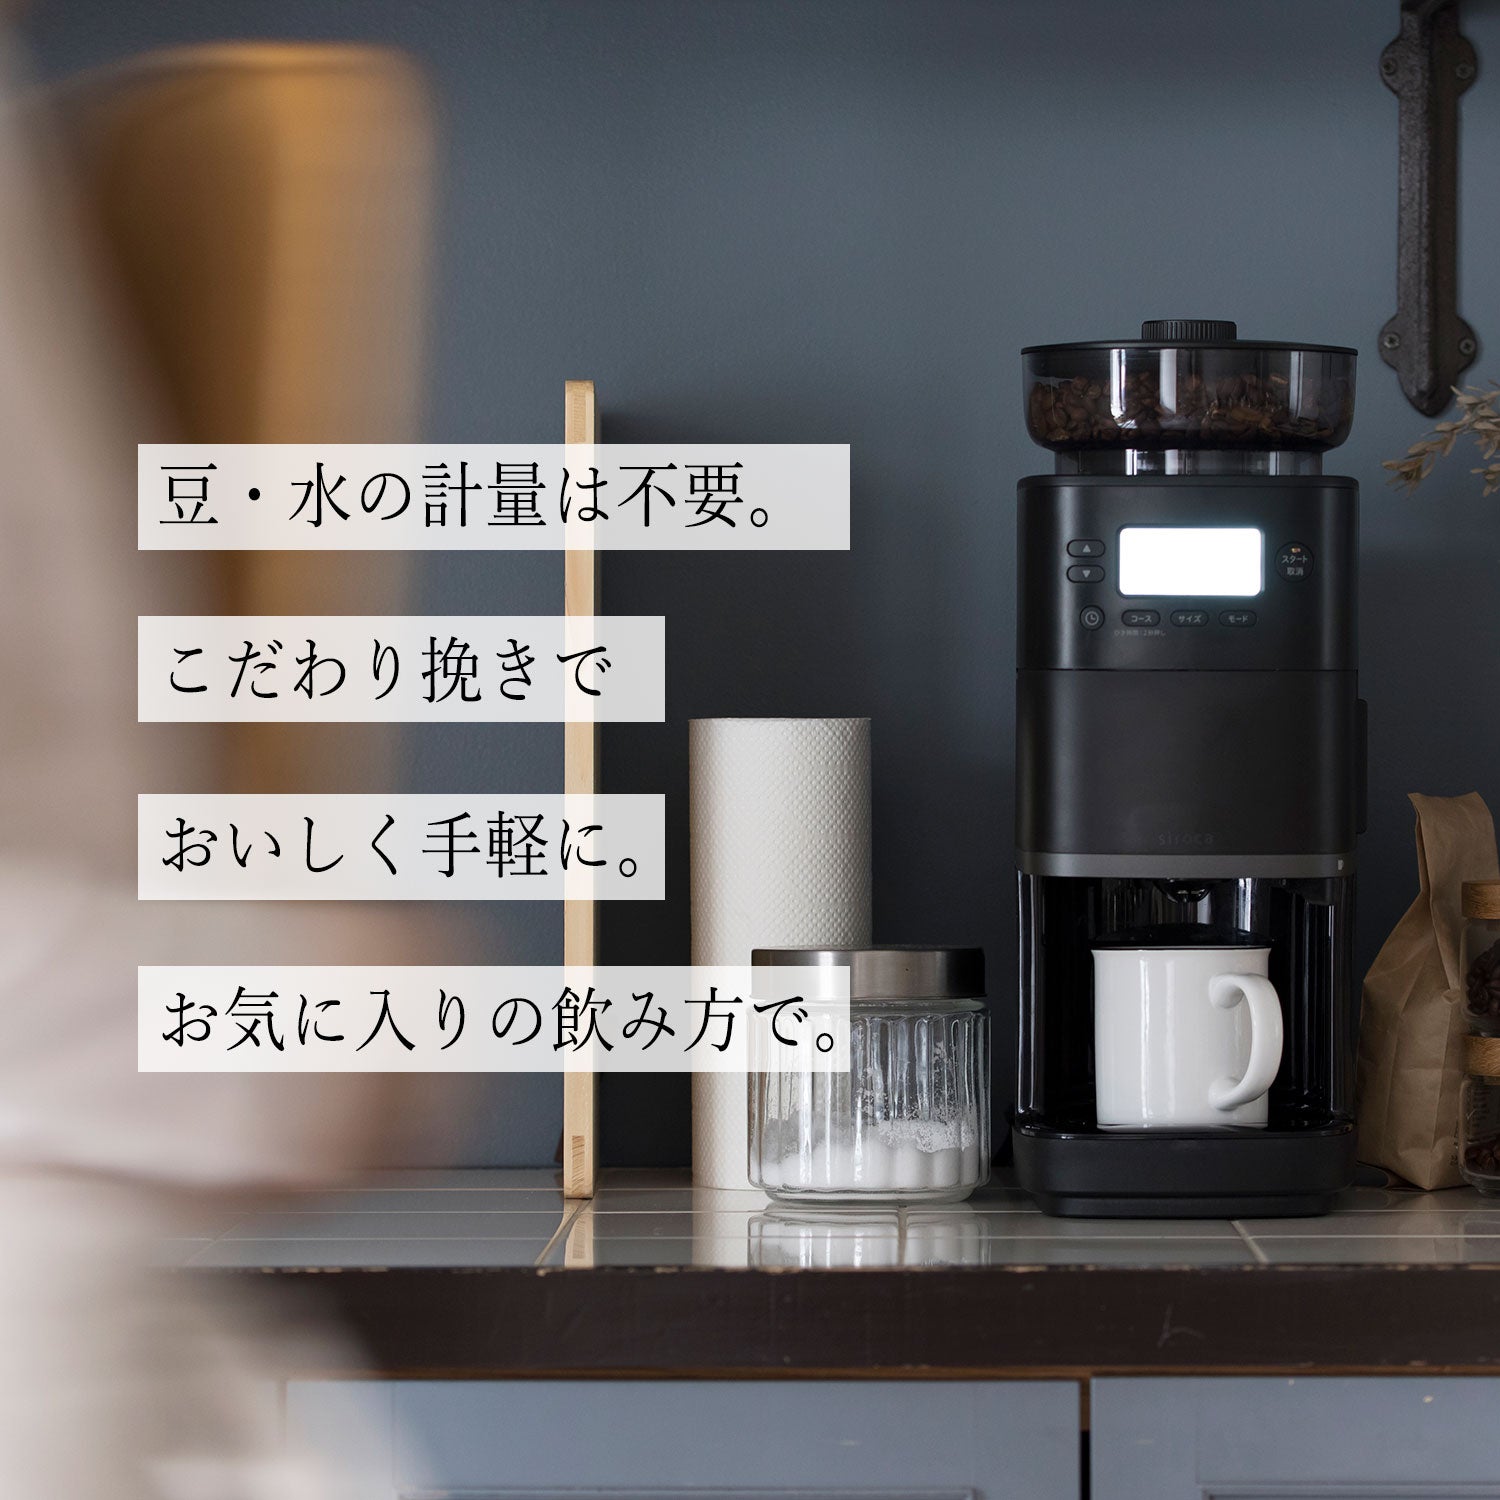 コーン式全自動コーヒーメーカー「カフェばこPRO」 SC-C271 | シロカ 